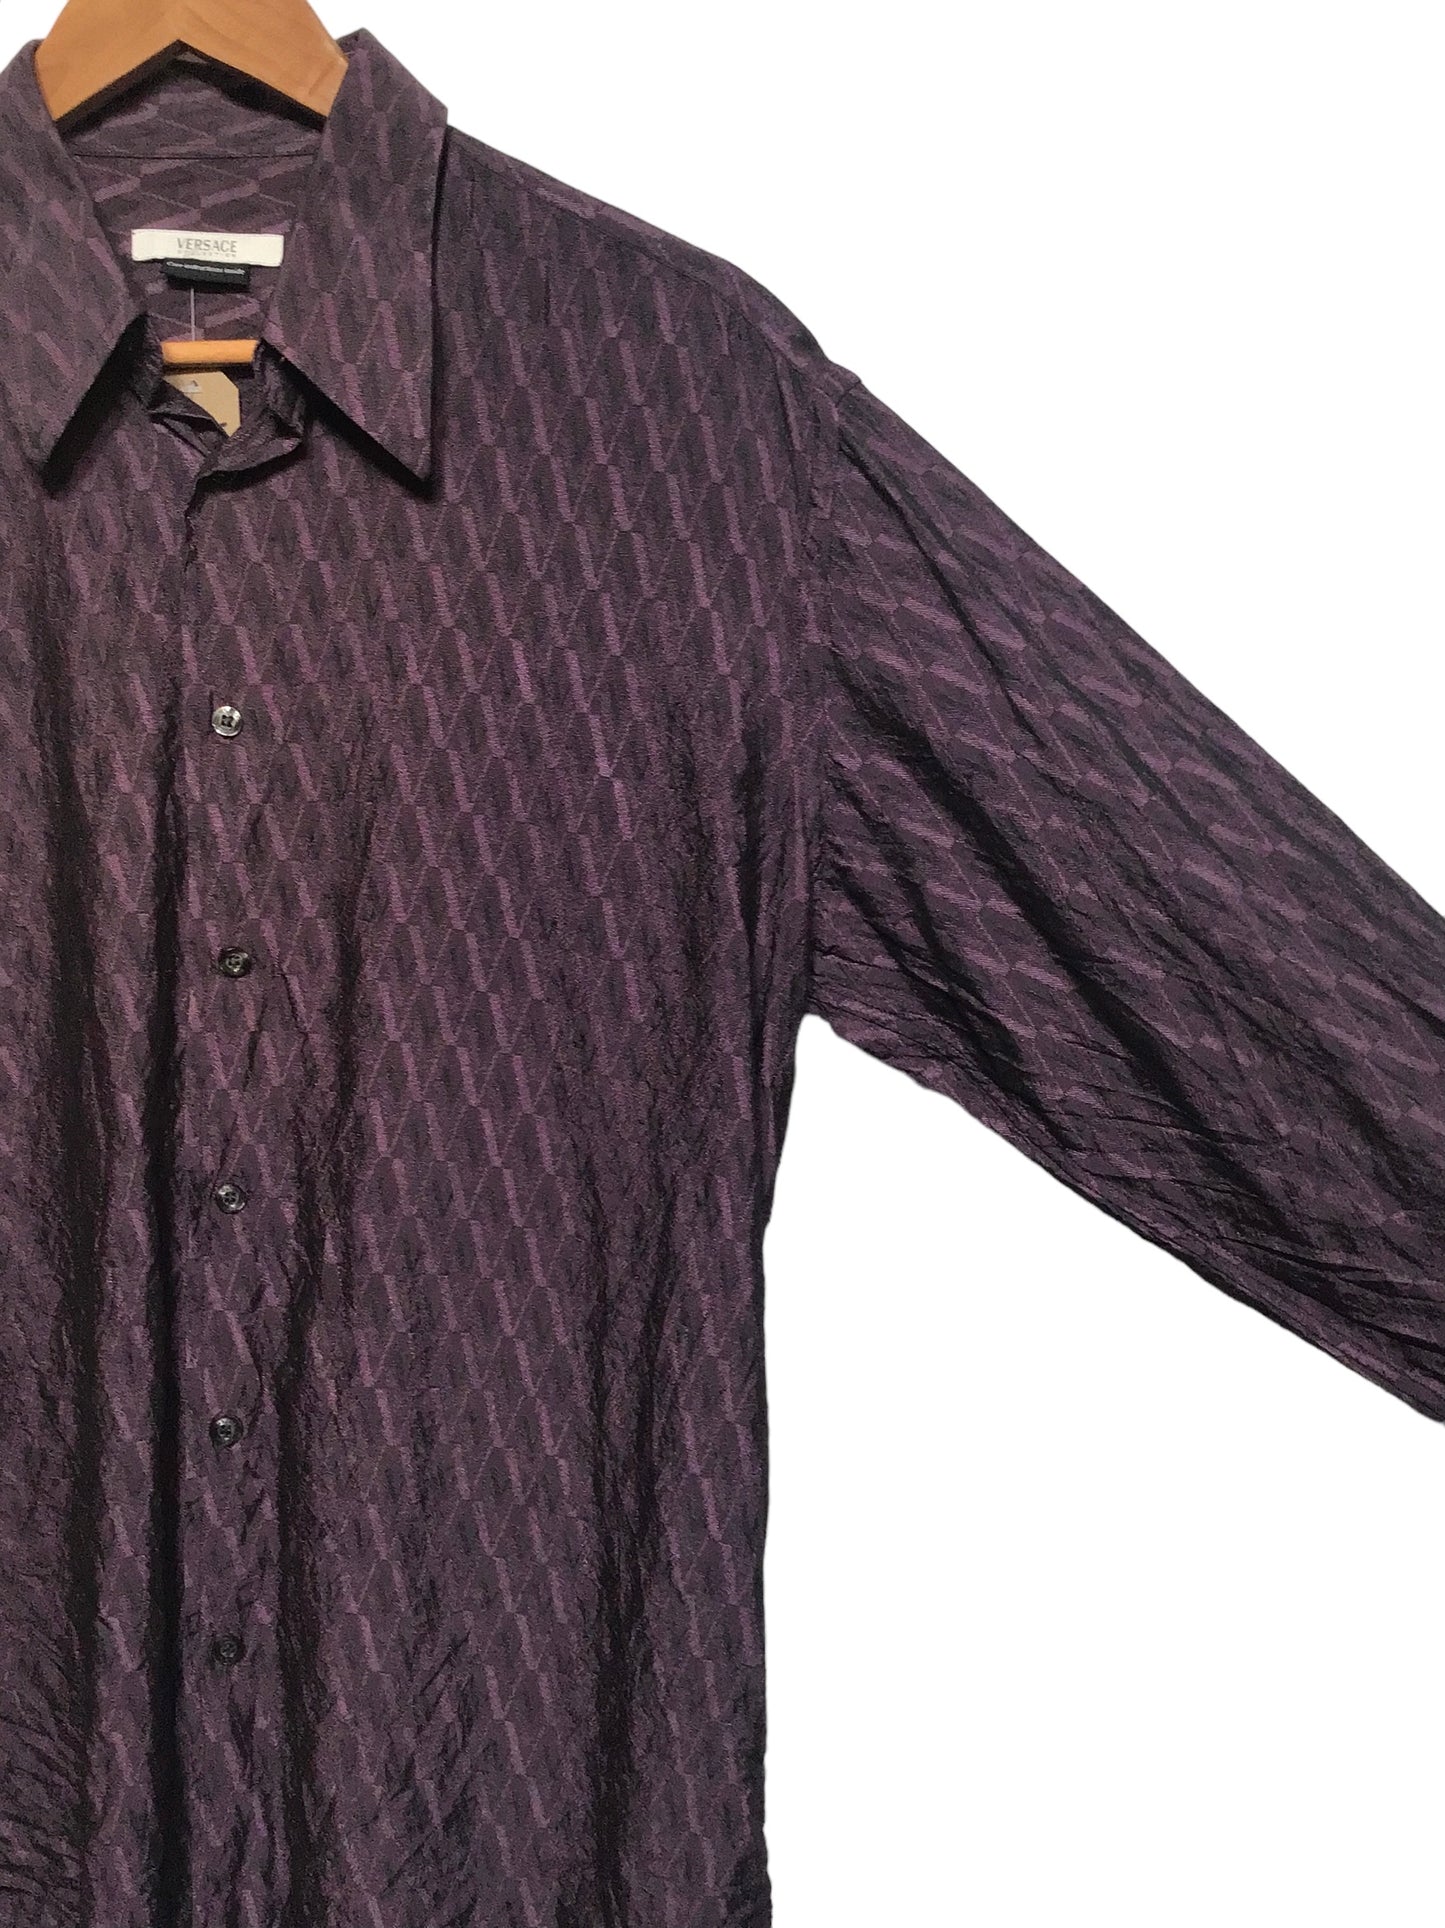 Versace Textured Shirt (Size L)